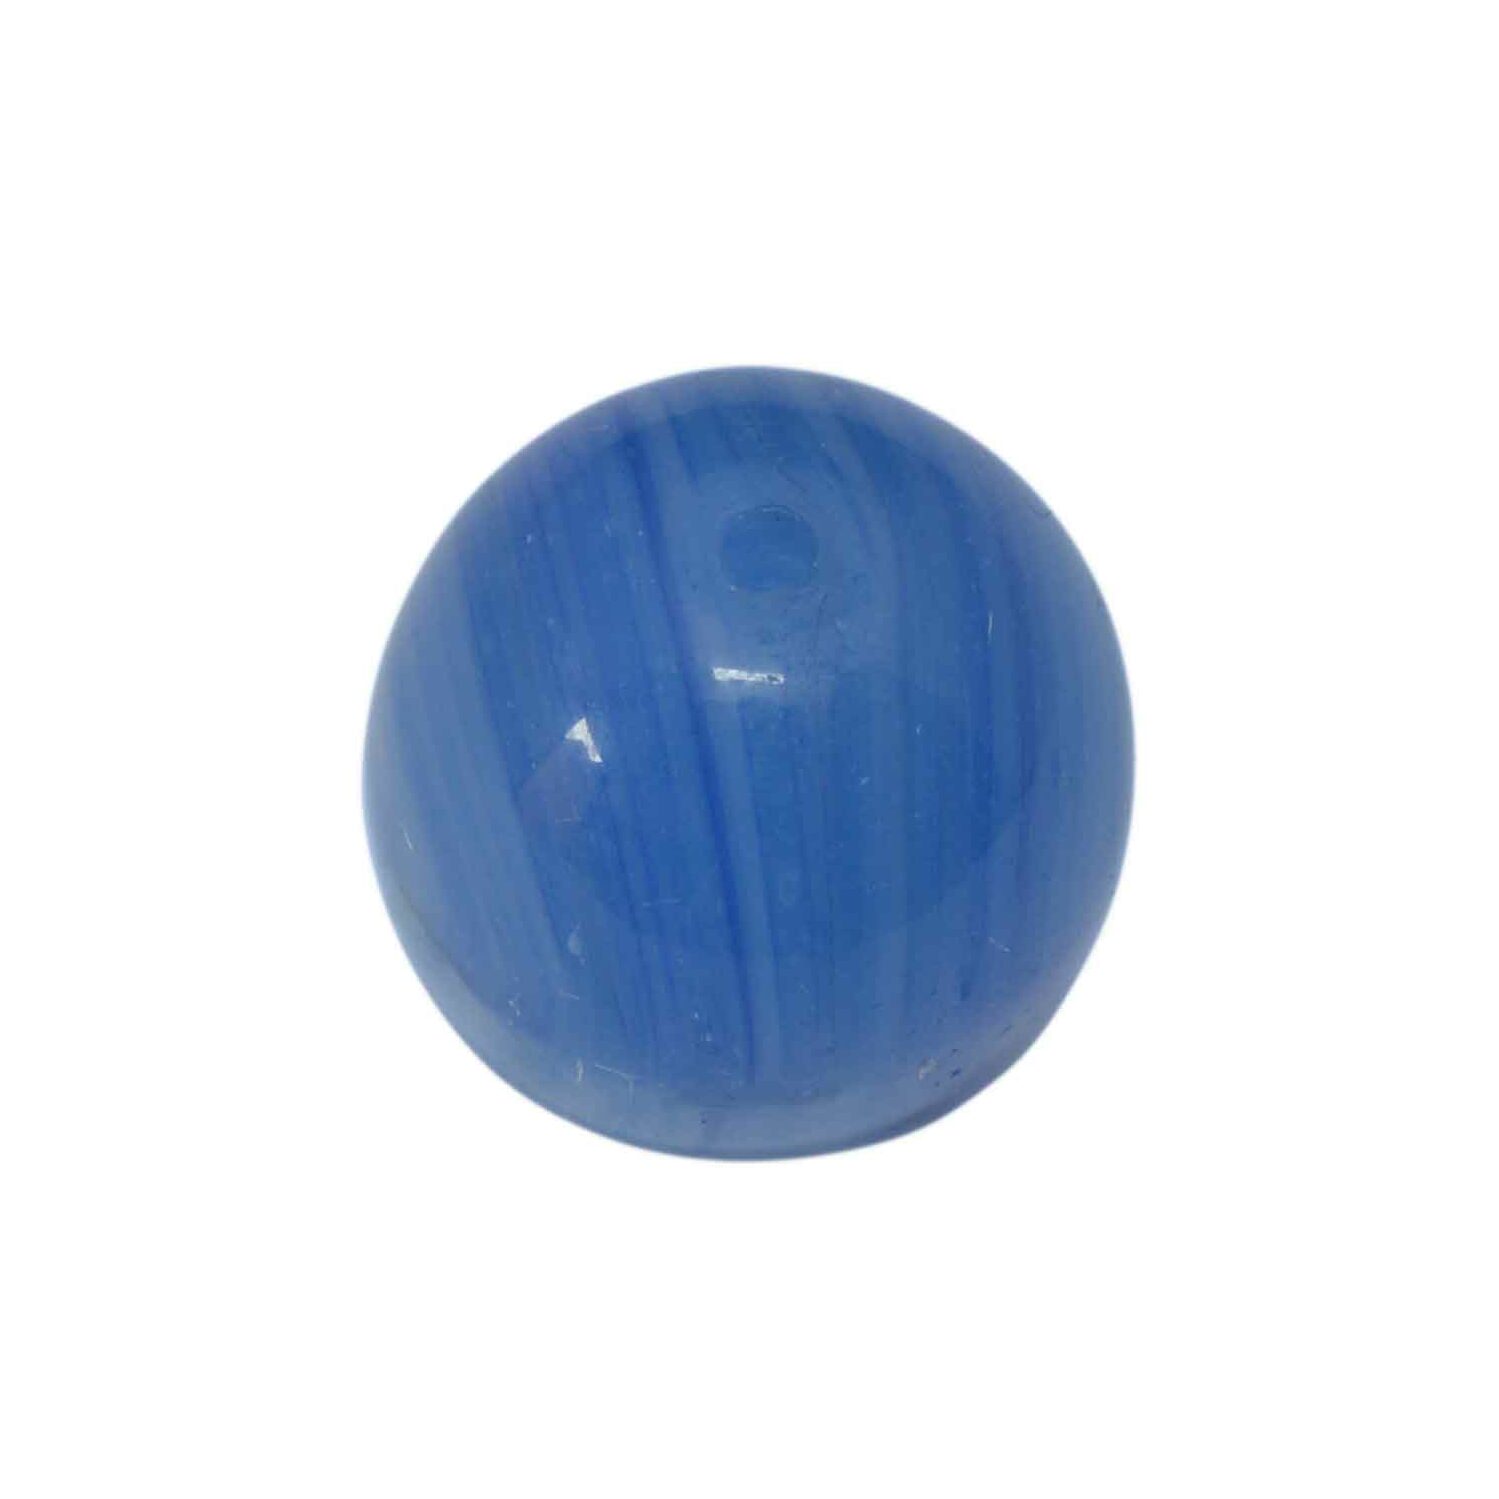 Blauwe ronde glaskraal met witte strepen